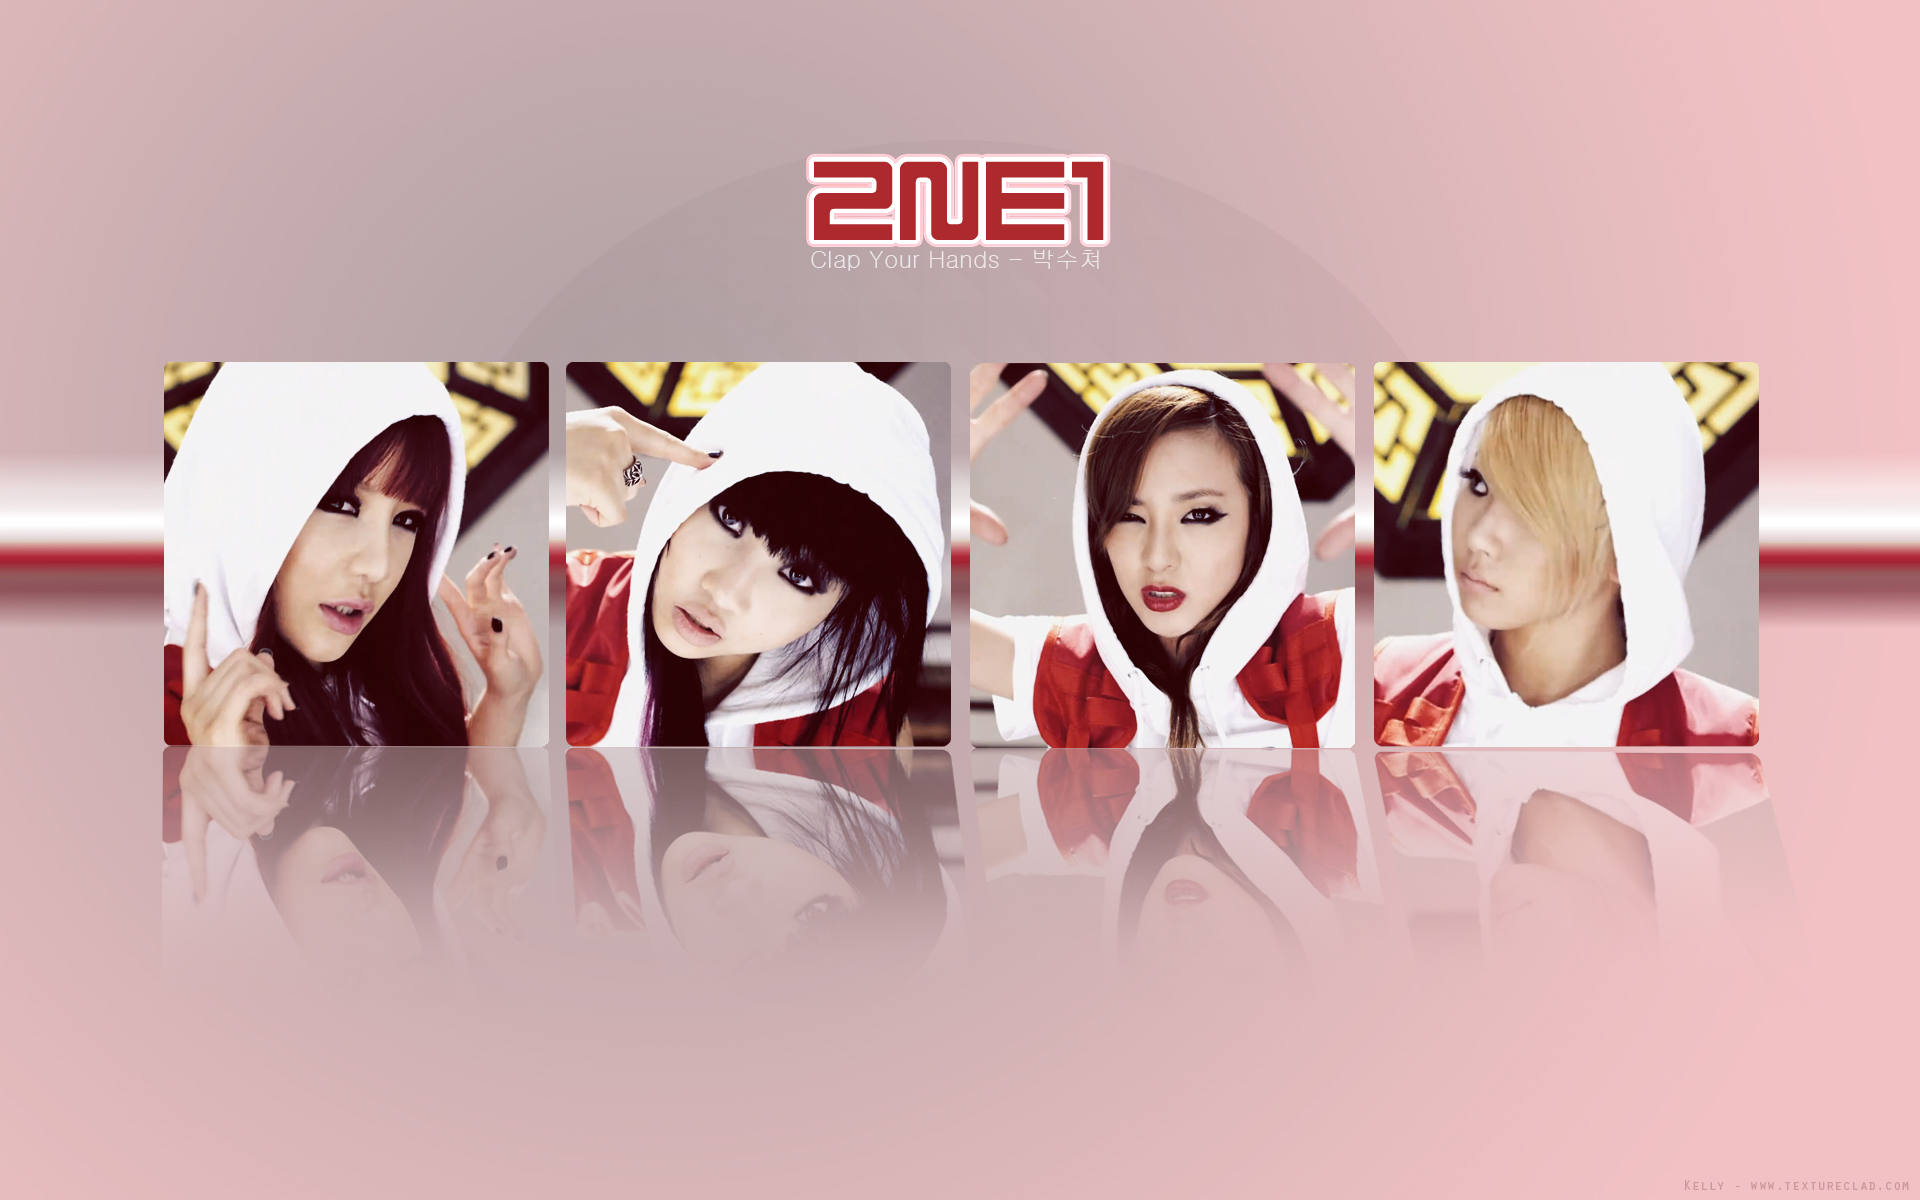 2ne1, K pop, Pop, Dance, Korean, Korea, Poster Wallpaper